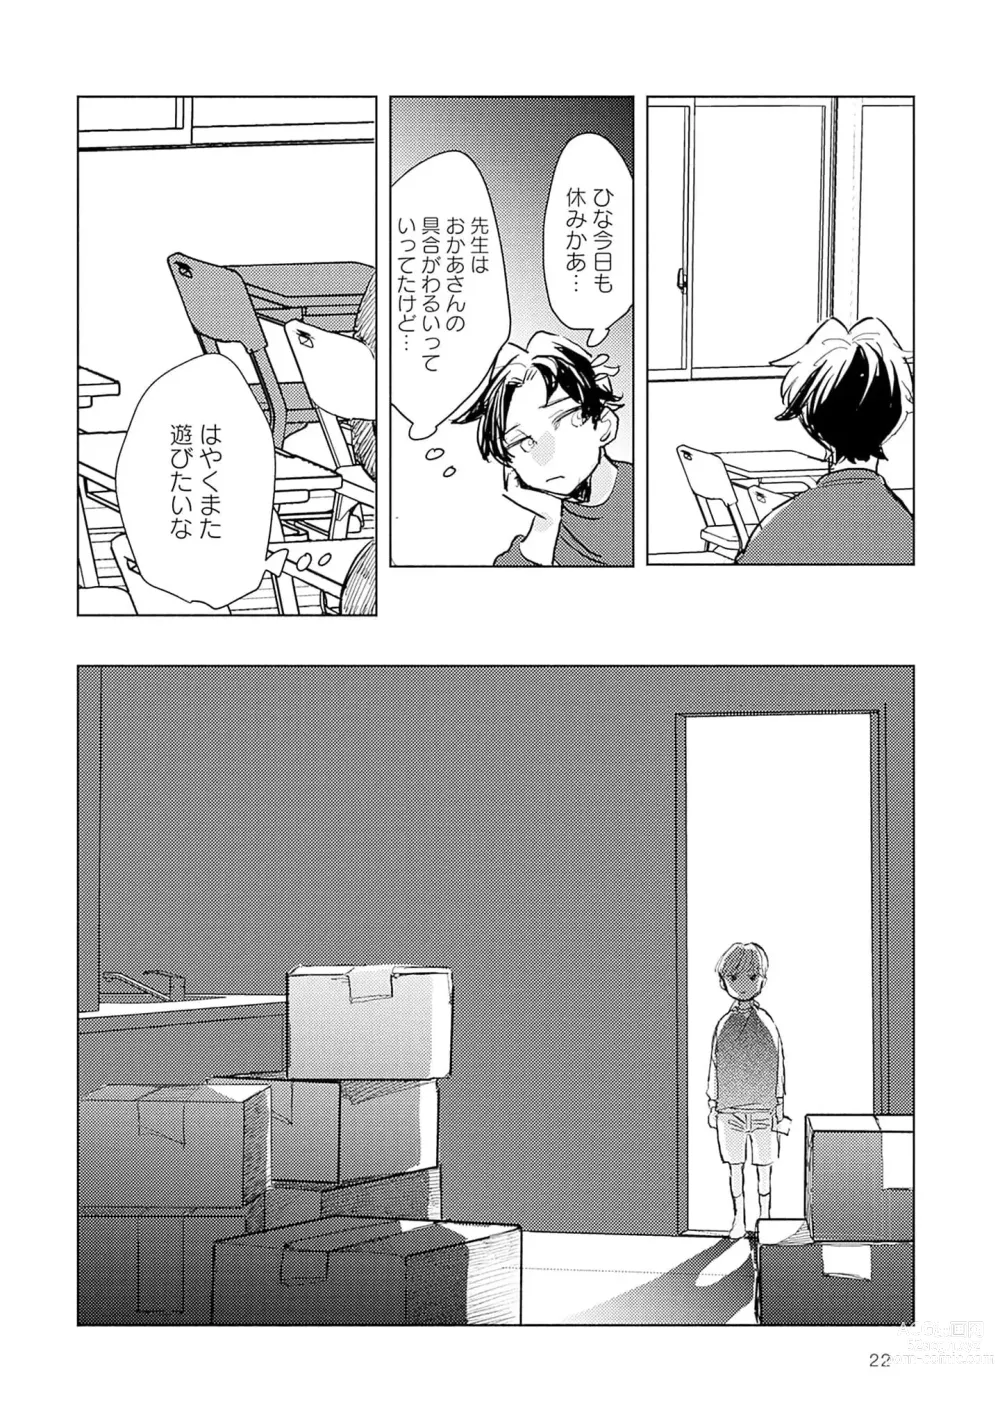 Page 24 of manga Strawberry na Days 2